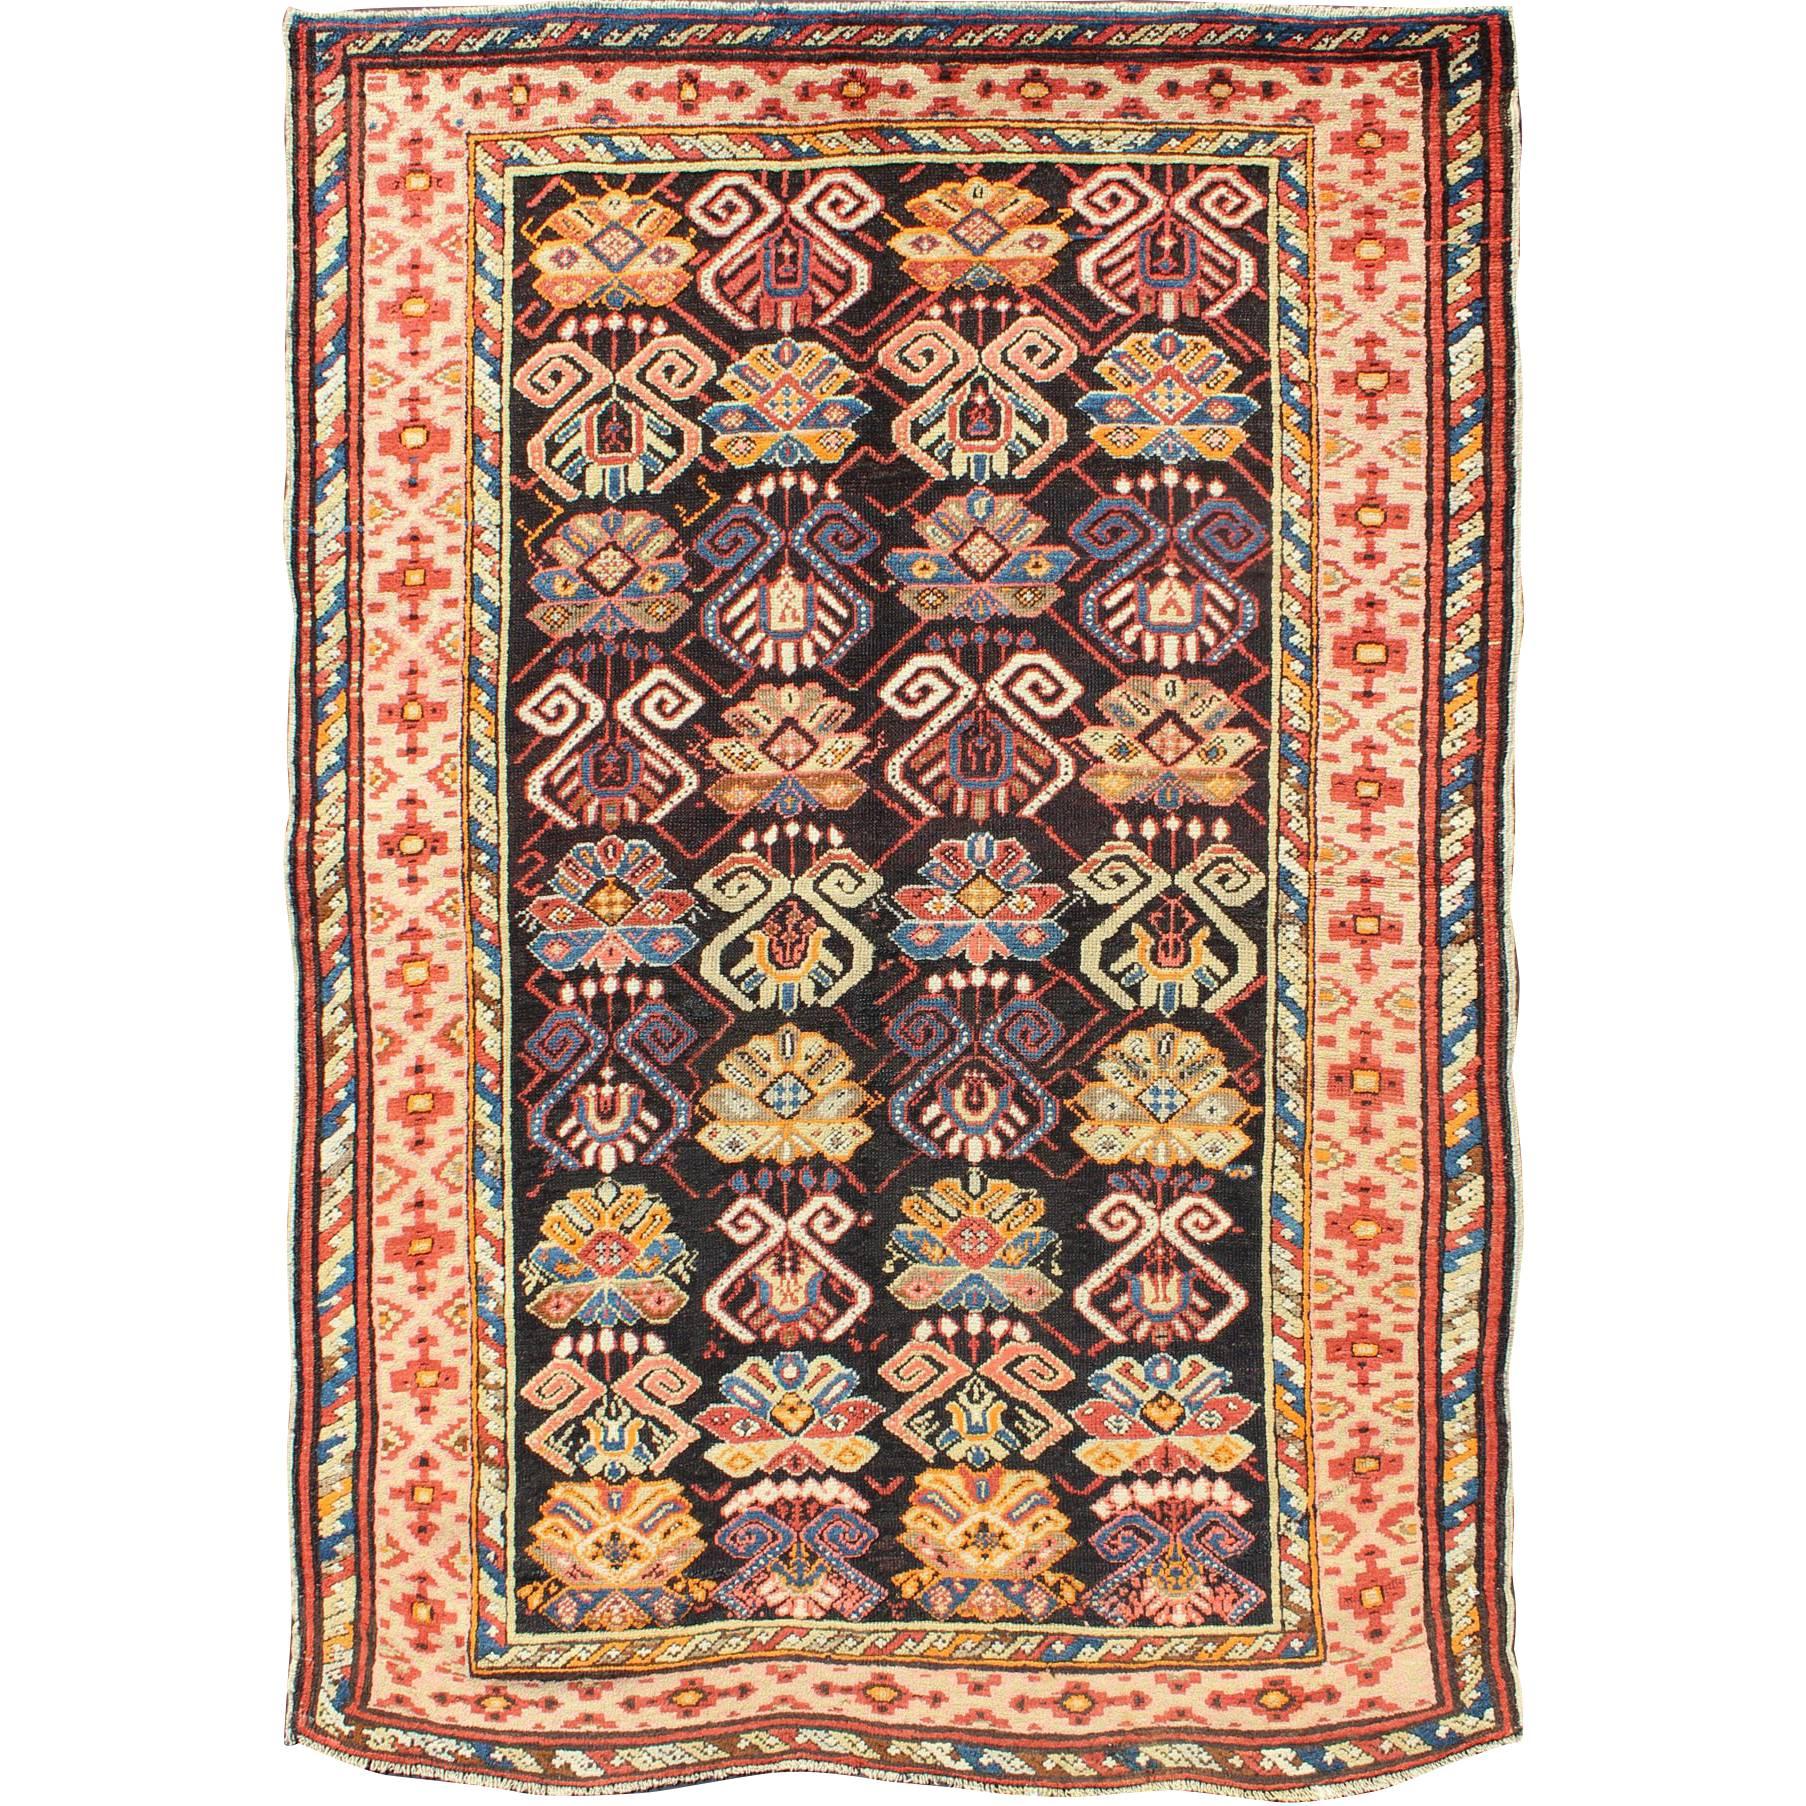 Bunter antiker kaukasischer Teppich mit All-Over-Design